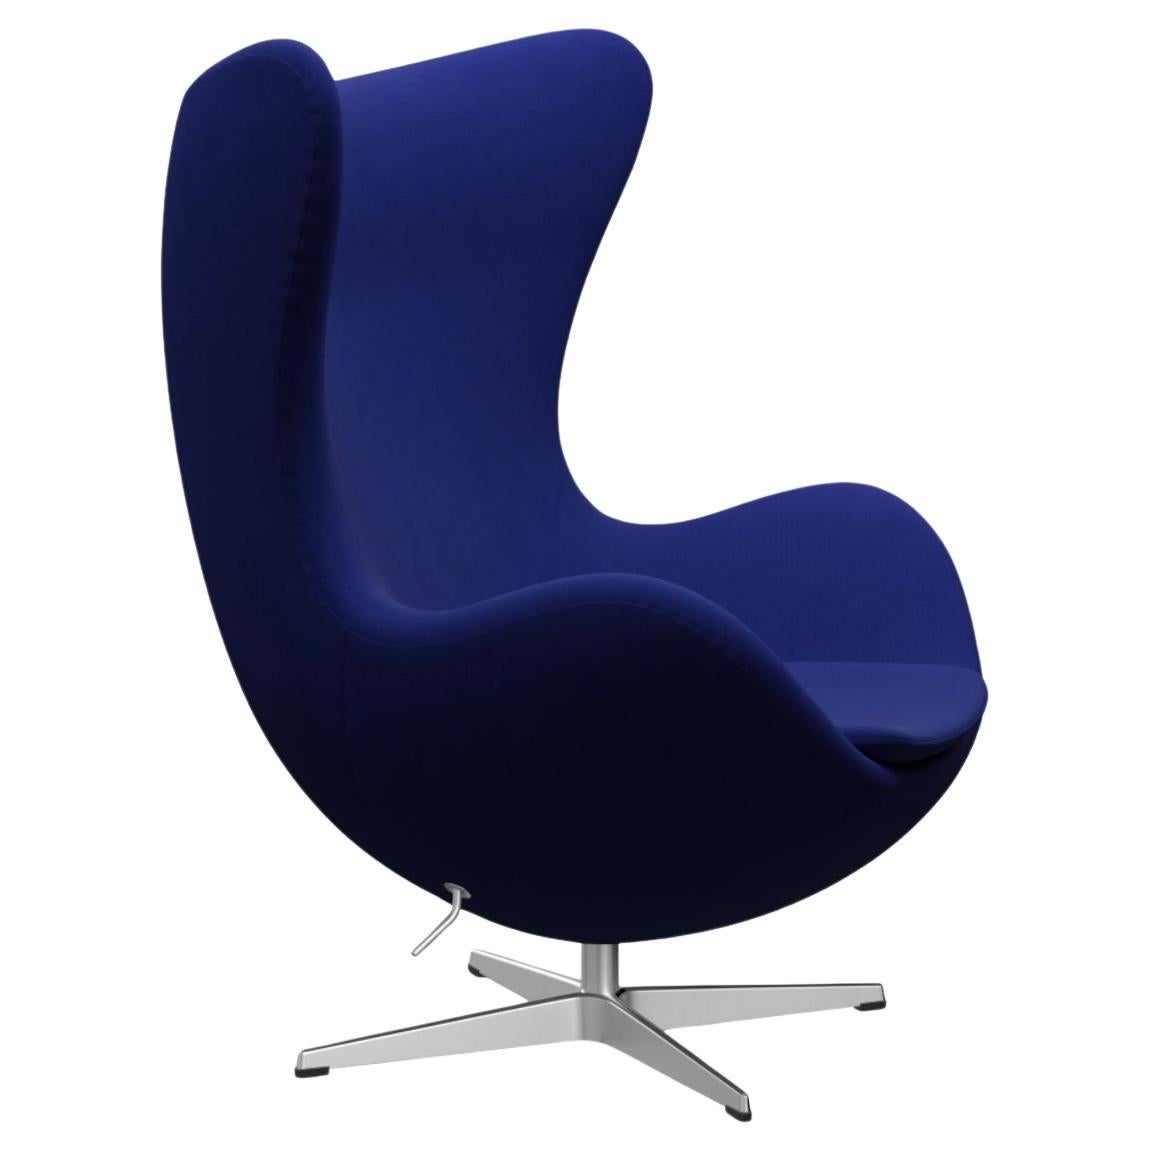 Der Egg Stuhl von Arne Jacobsen für Fritz Hansen, Blau, Dänemark, 1958, 2000er Jahre.  Das Scalamandre Ozelot-Wurfkissen auf dem Hauptbild dient nur zu Ausstellungszwecken und ist NICHT im Lieferumfang des Stuhls enthalten.  

Der Egg™-Stuhl von